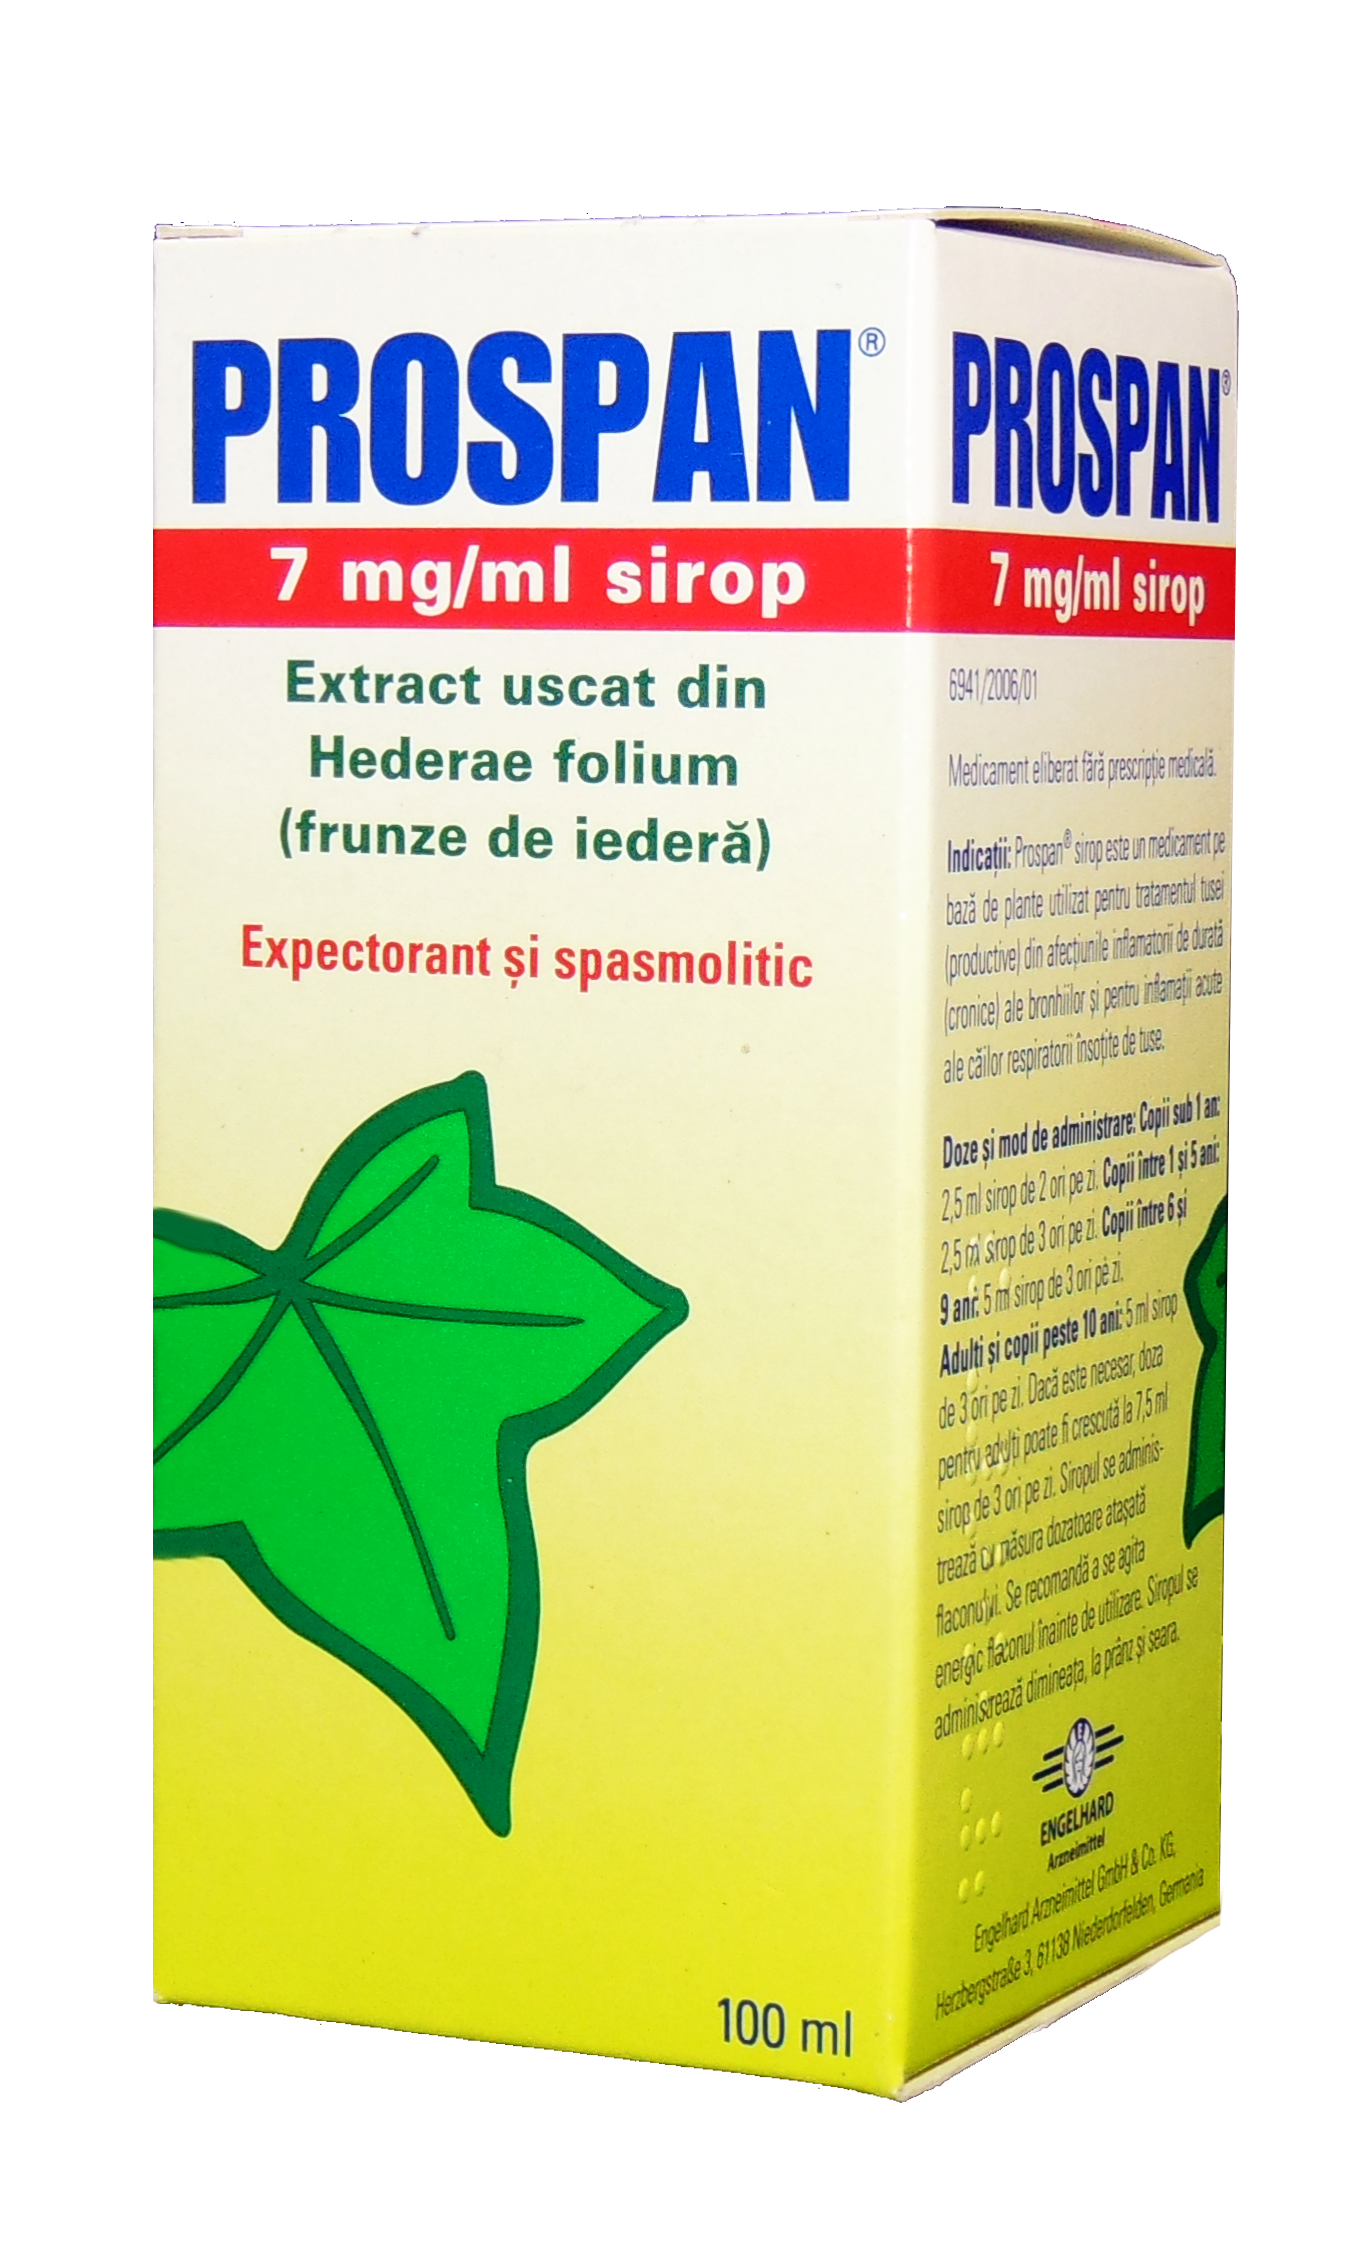 OTC - medicamente fara reteta - Prospan 7mg/ml sirop x 100ml, medik-on.ro